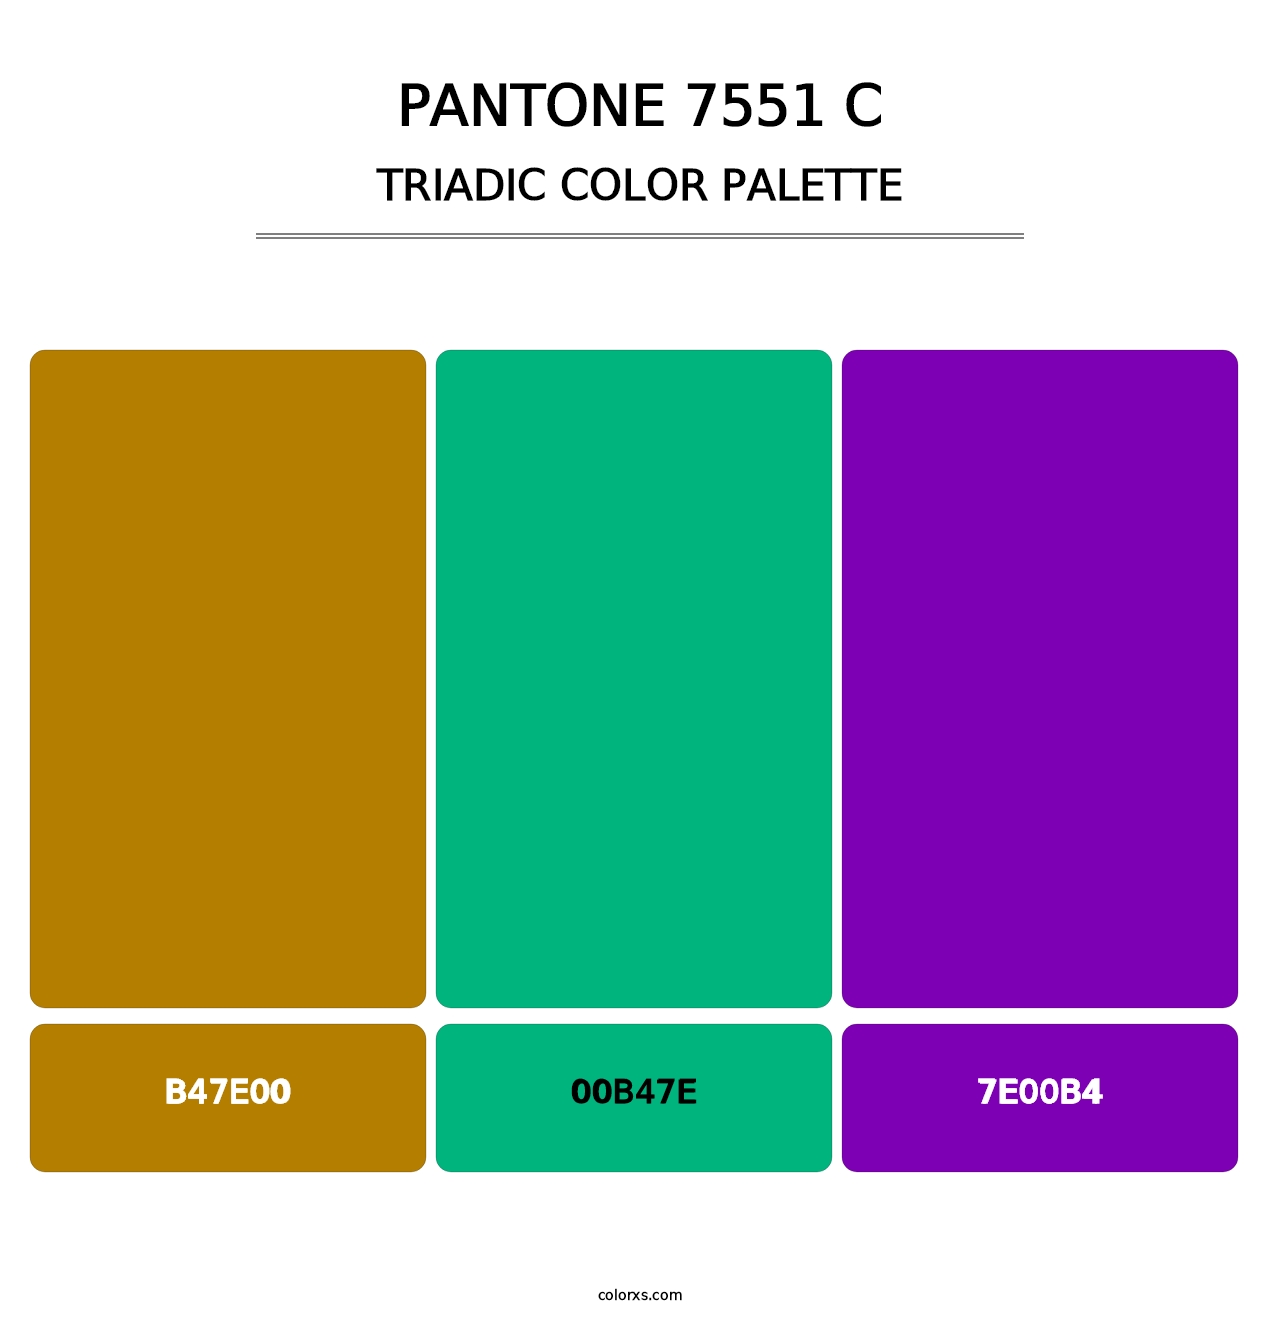 PANTONE 7551 C - Triadic Color Palette